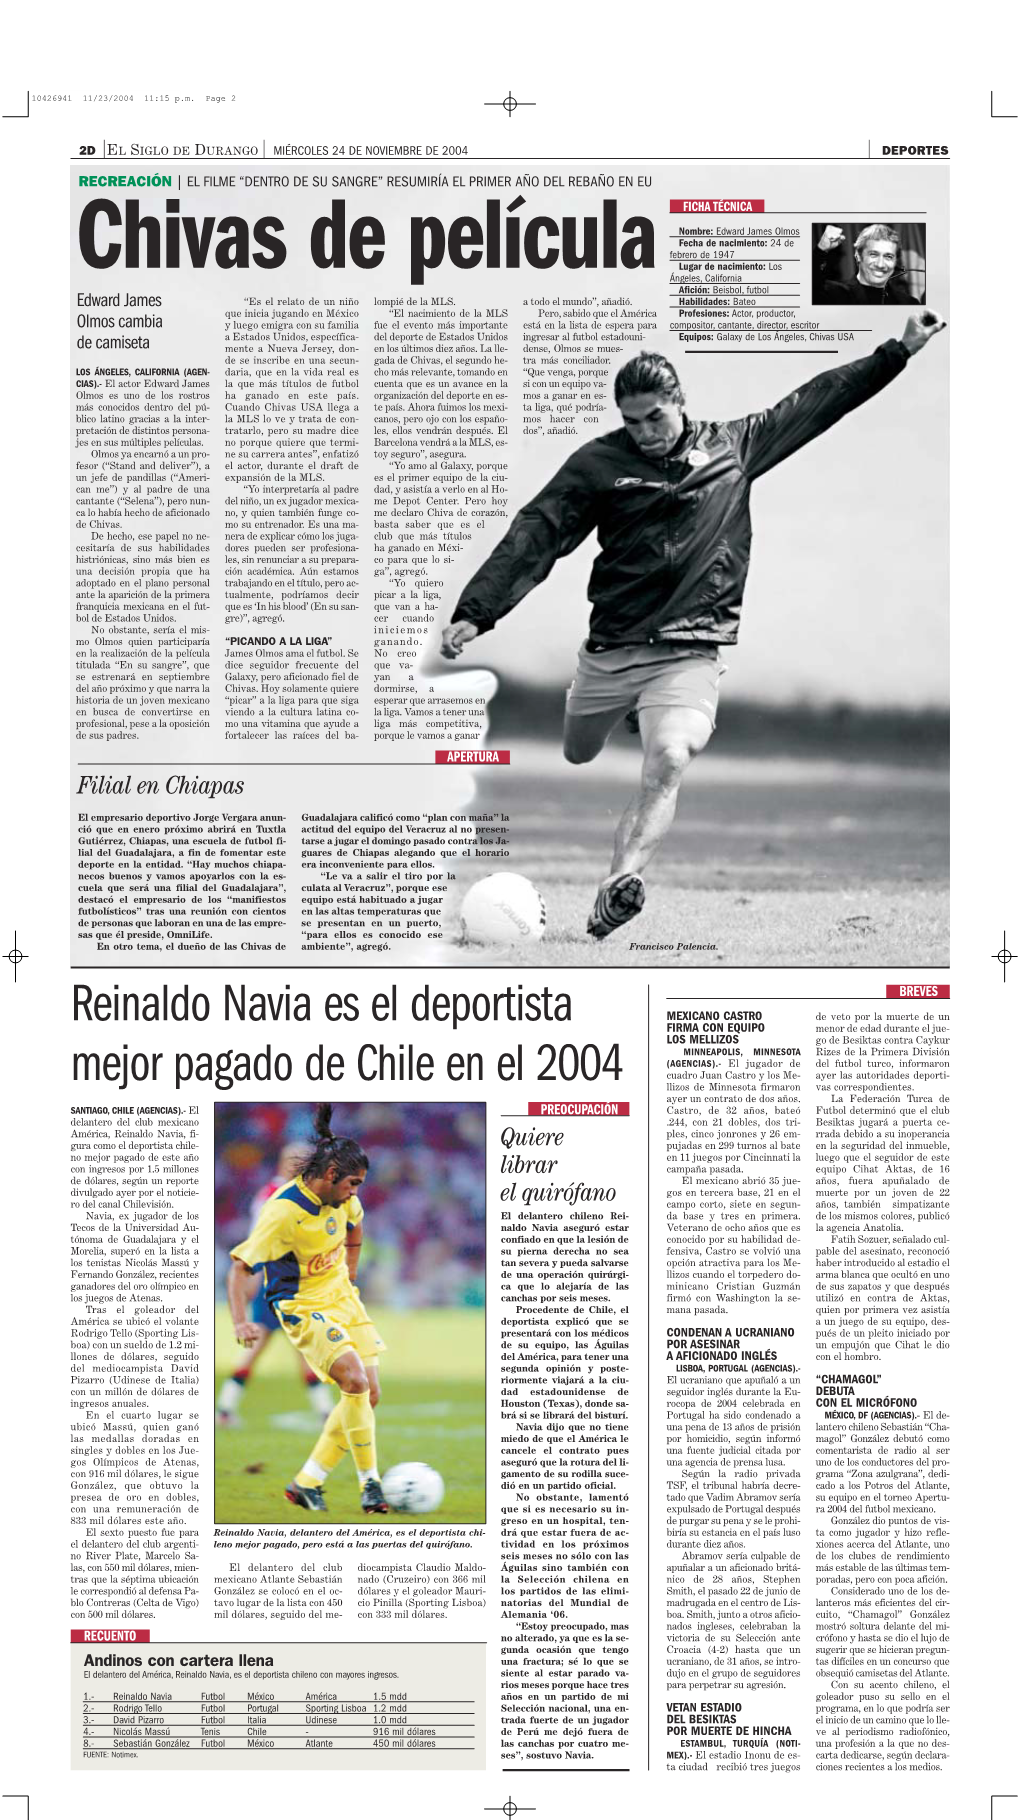 Reinaldo Navia Es El Deportista Mejor Pagado De Chile En El 2004